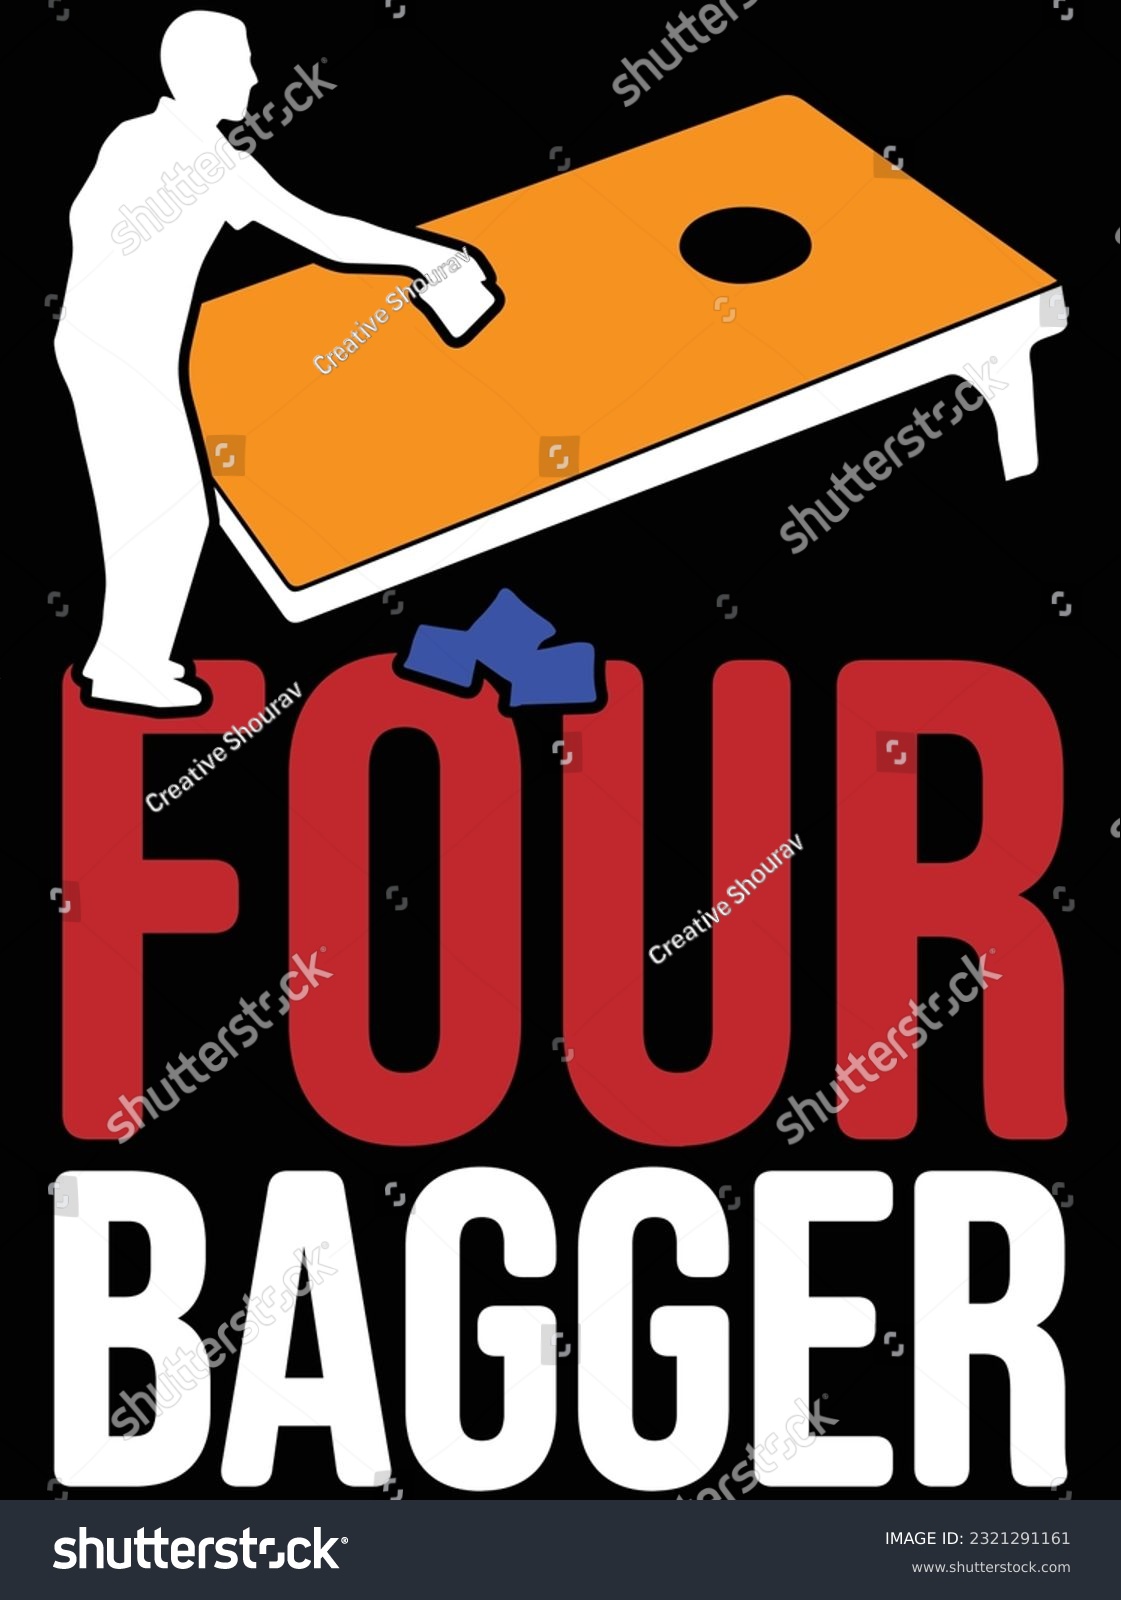 SVG of Four bagger vector art design, eps file. design file for t-shirt. SVG, EPS cuttable design file svg